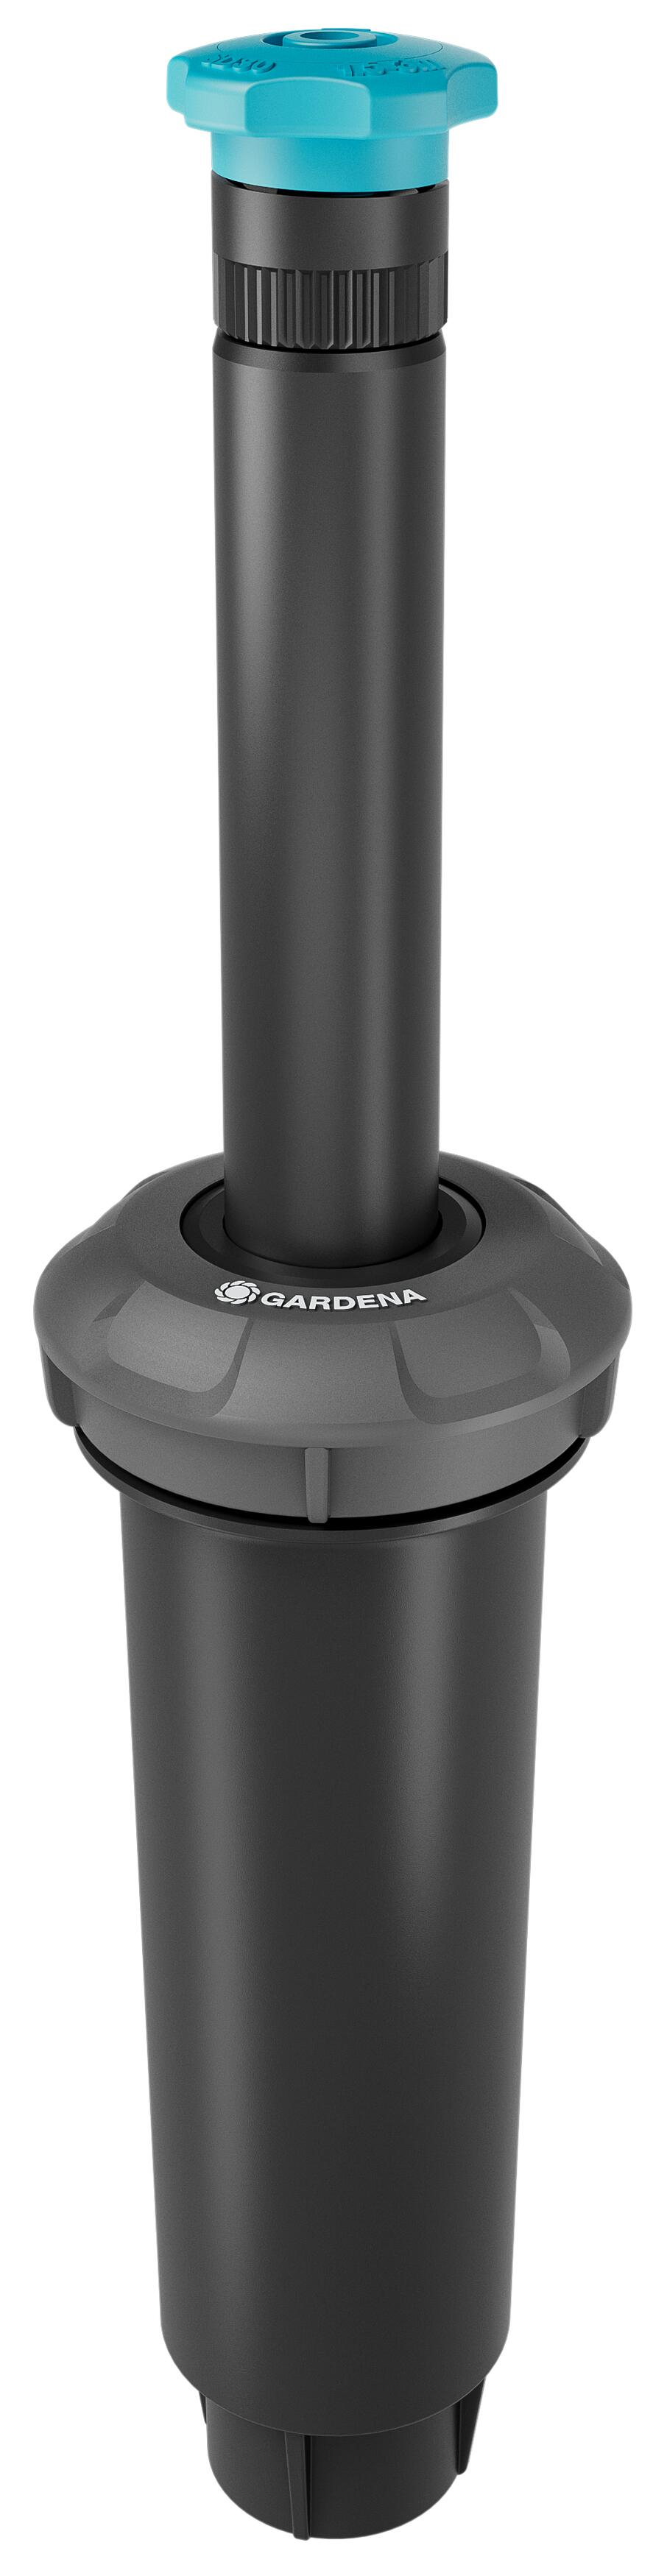 Προϊόν με όνομα: Gardena 8241-20 αφαιρούμενος εκτοξευτήρας SD30